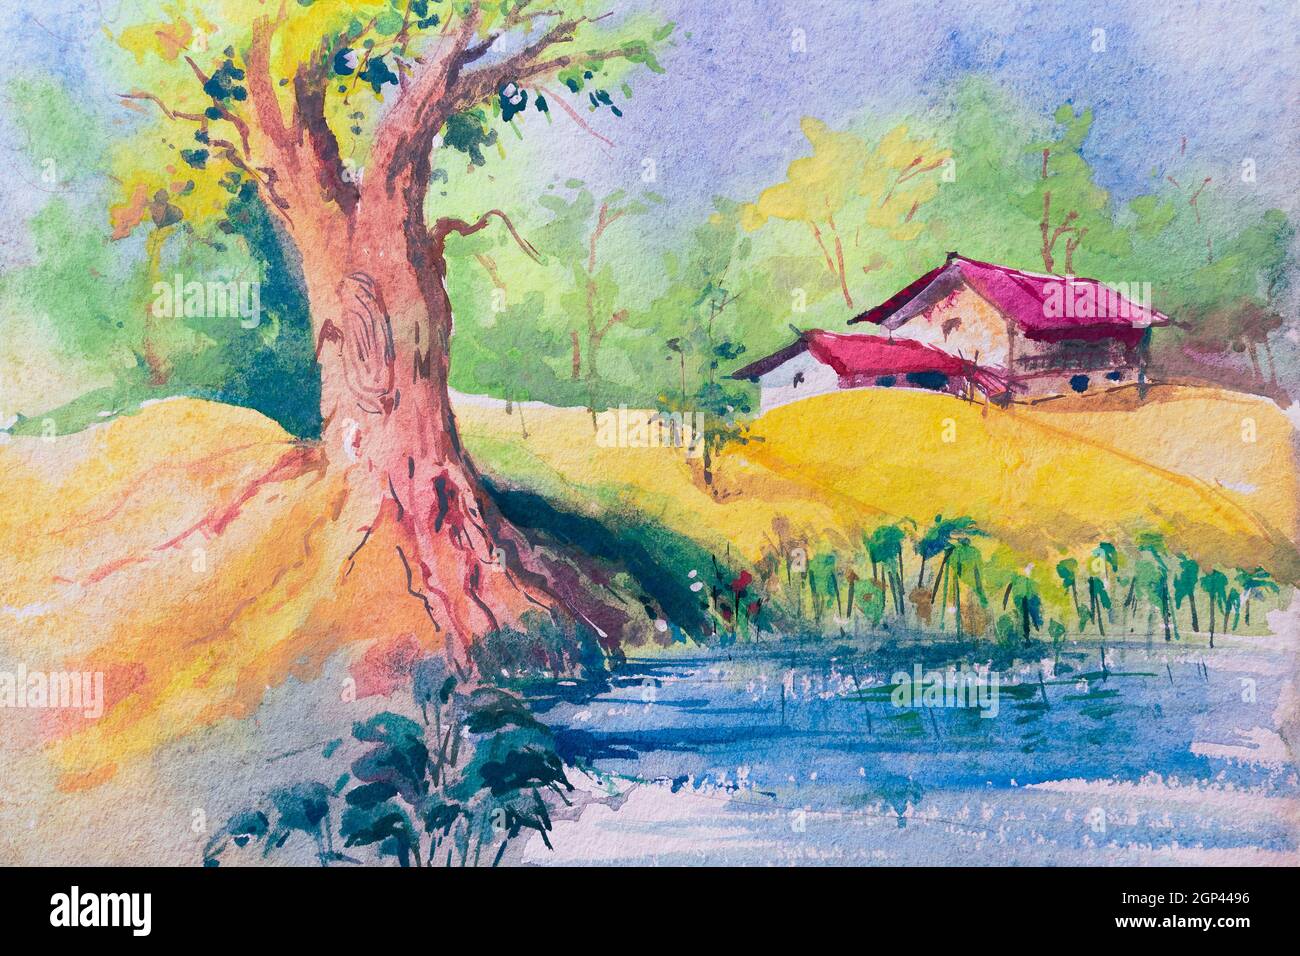 Farbenfrohe Aquarellmalerei des ländlichen indischen Dorfes. Zwei Häuser, ein großer Baum neben einem Teich mit blauem Himmel im Hintergrund. Indische Aquarellhand Stockfoto